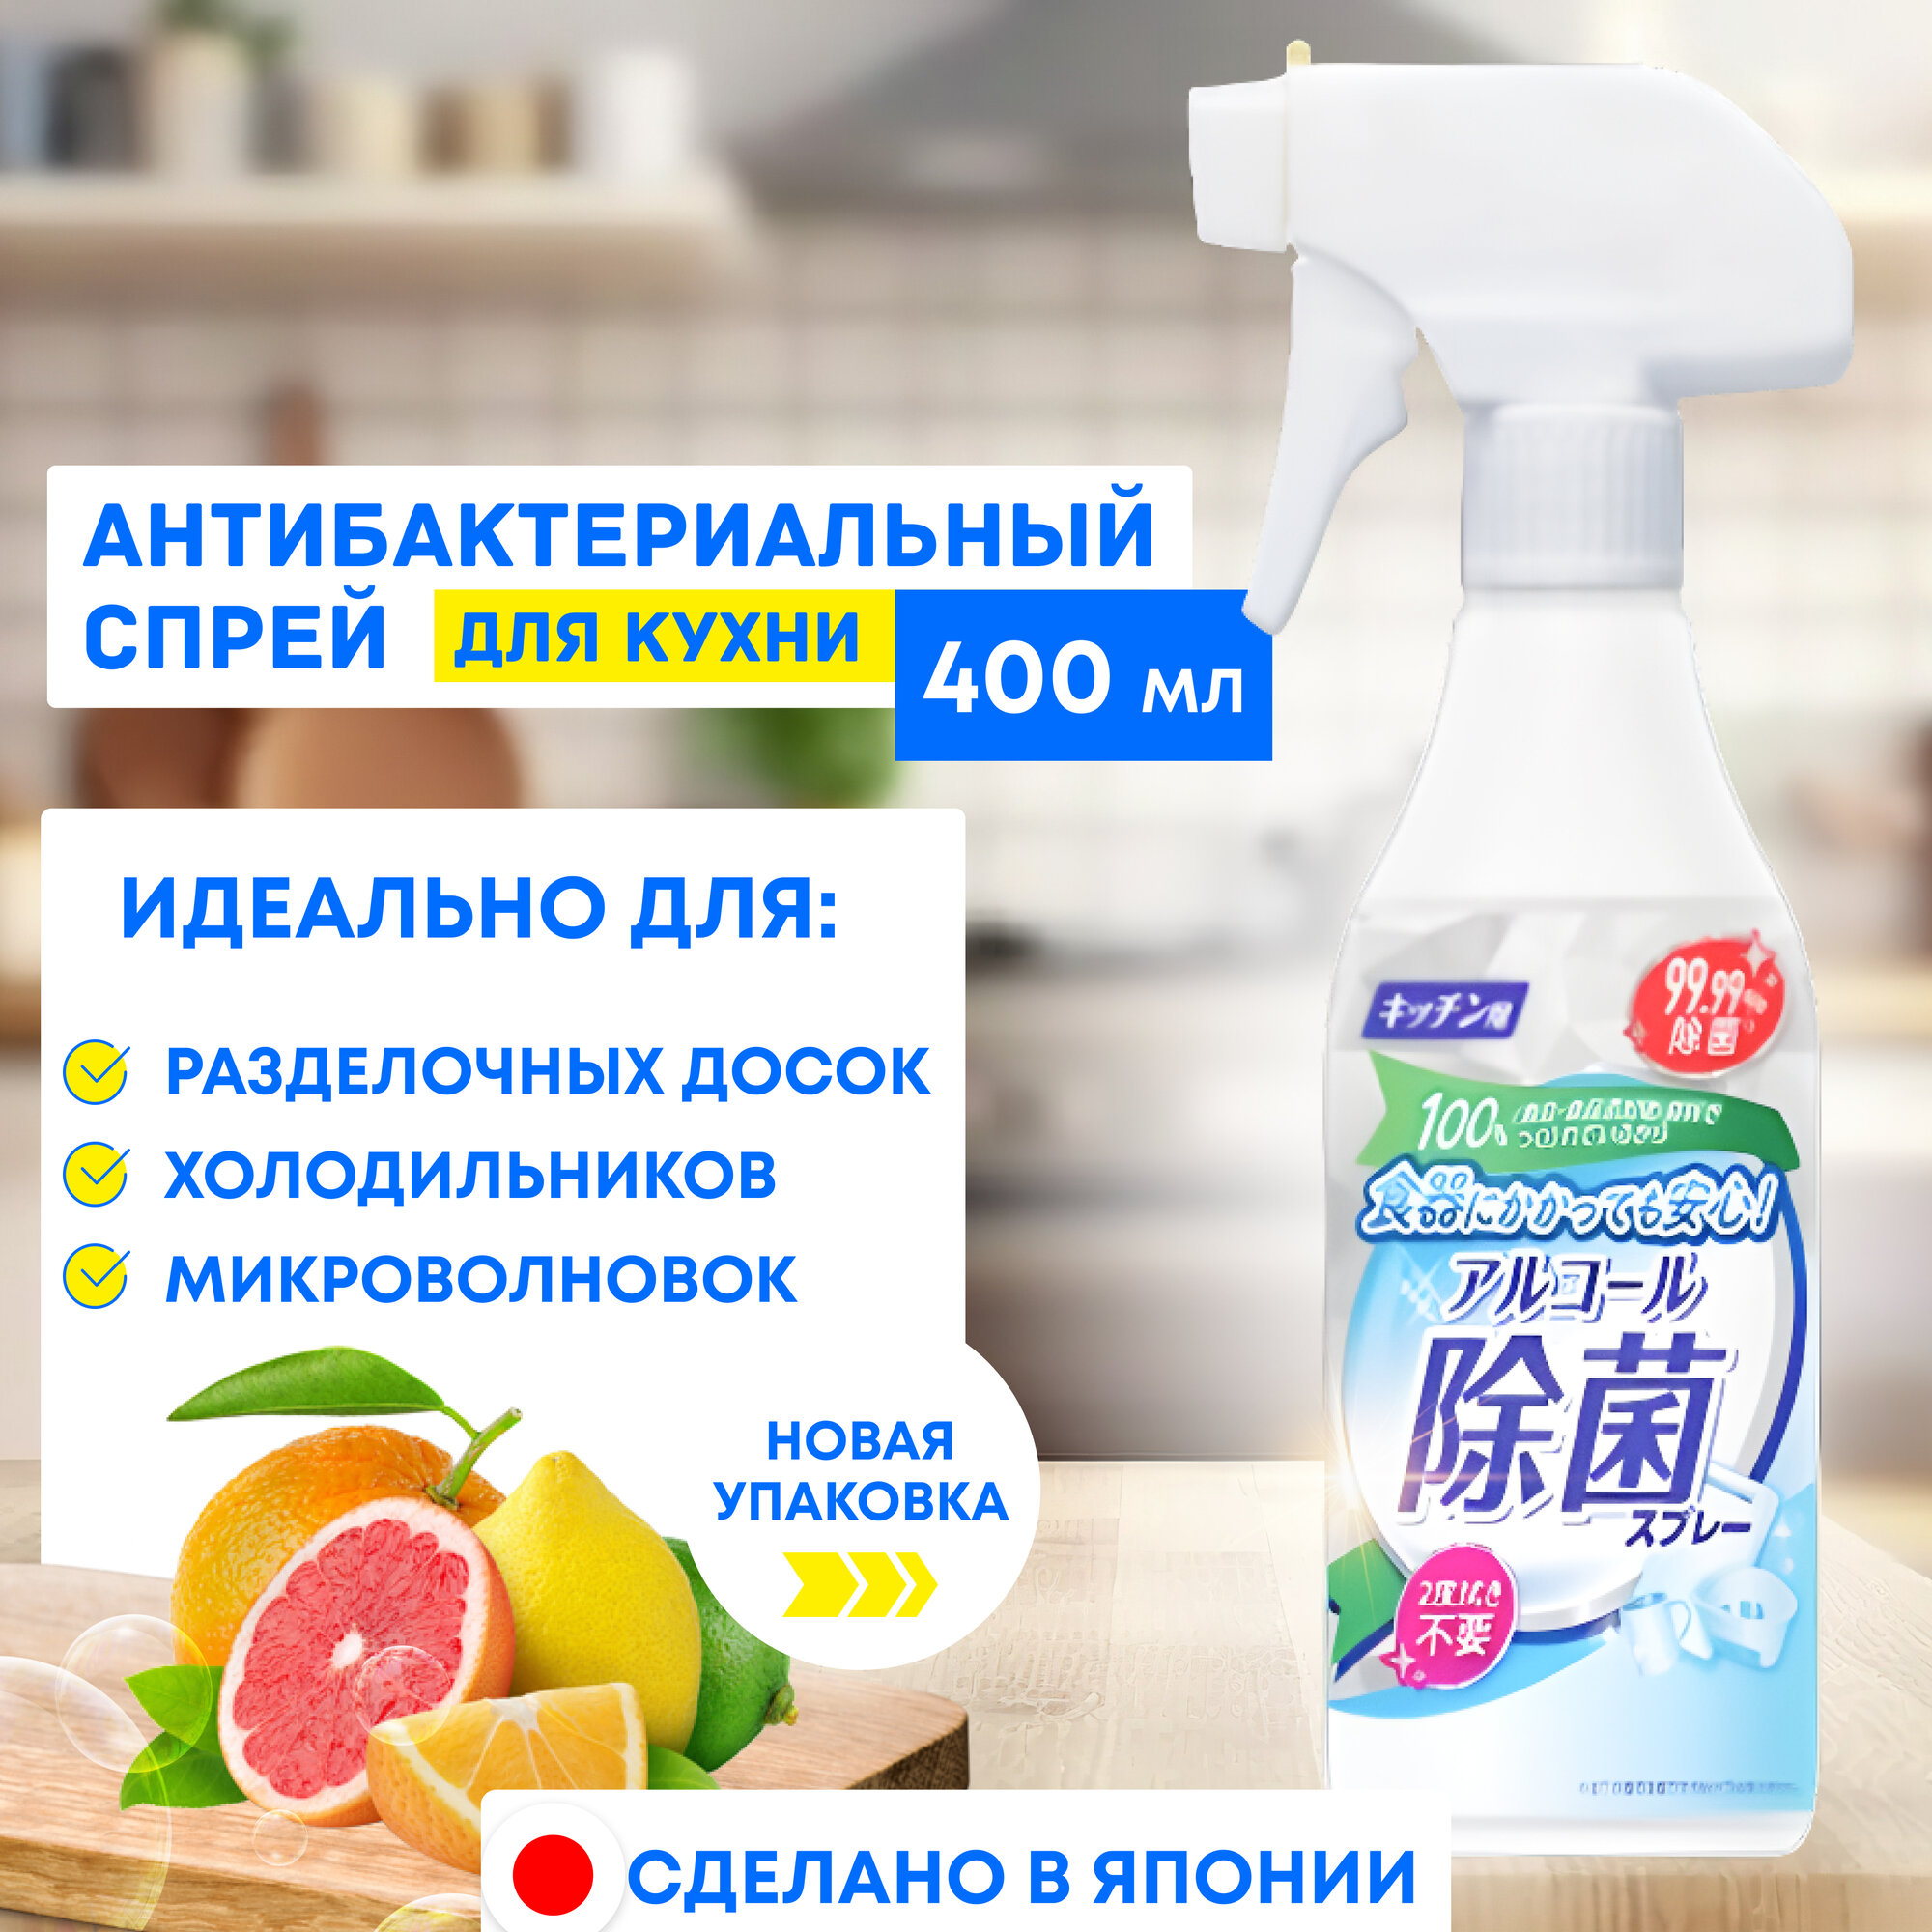 Mitsuei Кухонный спрей с антибактериальным эффектом 400 мл. / Универсальное чистящее средство для кухонных поверхностей / Япония